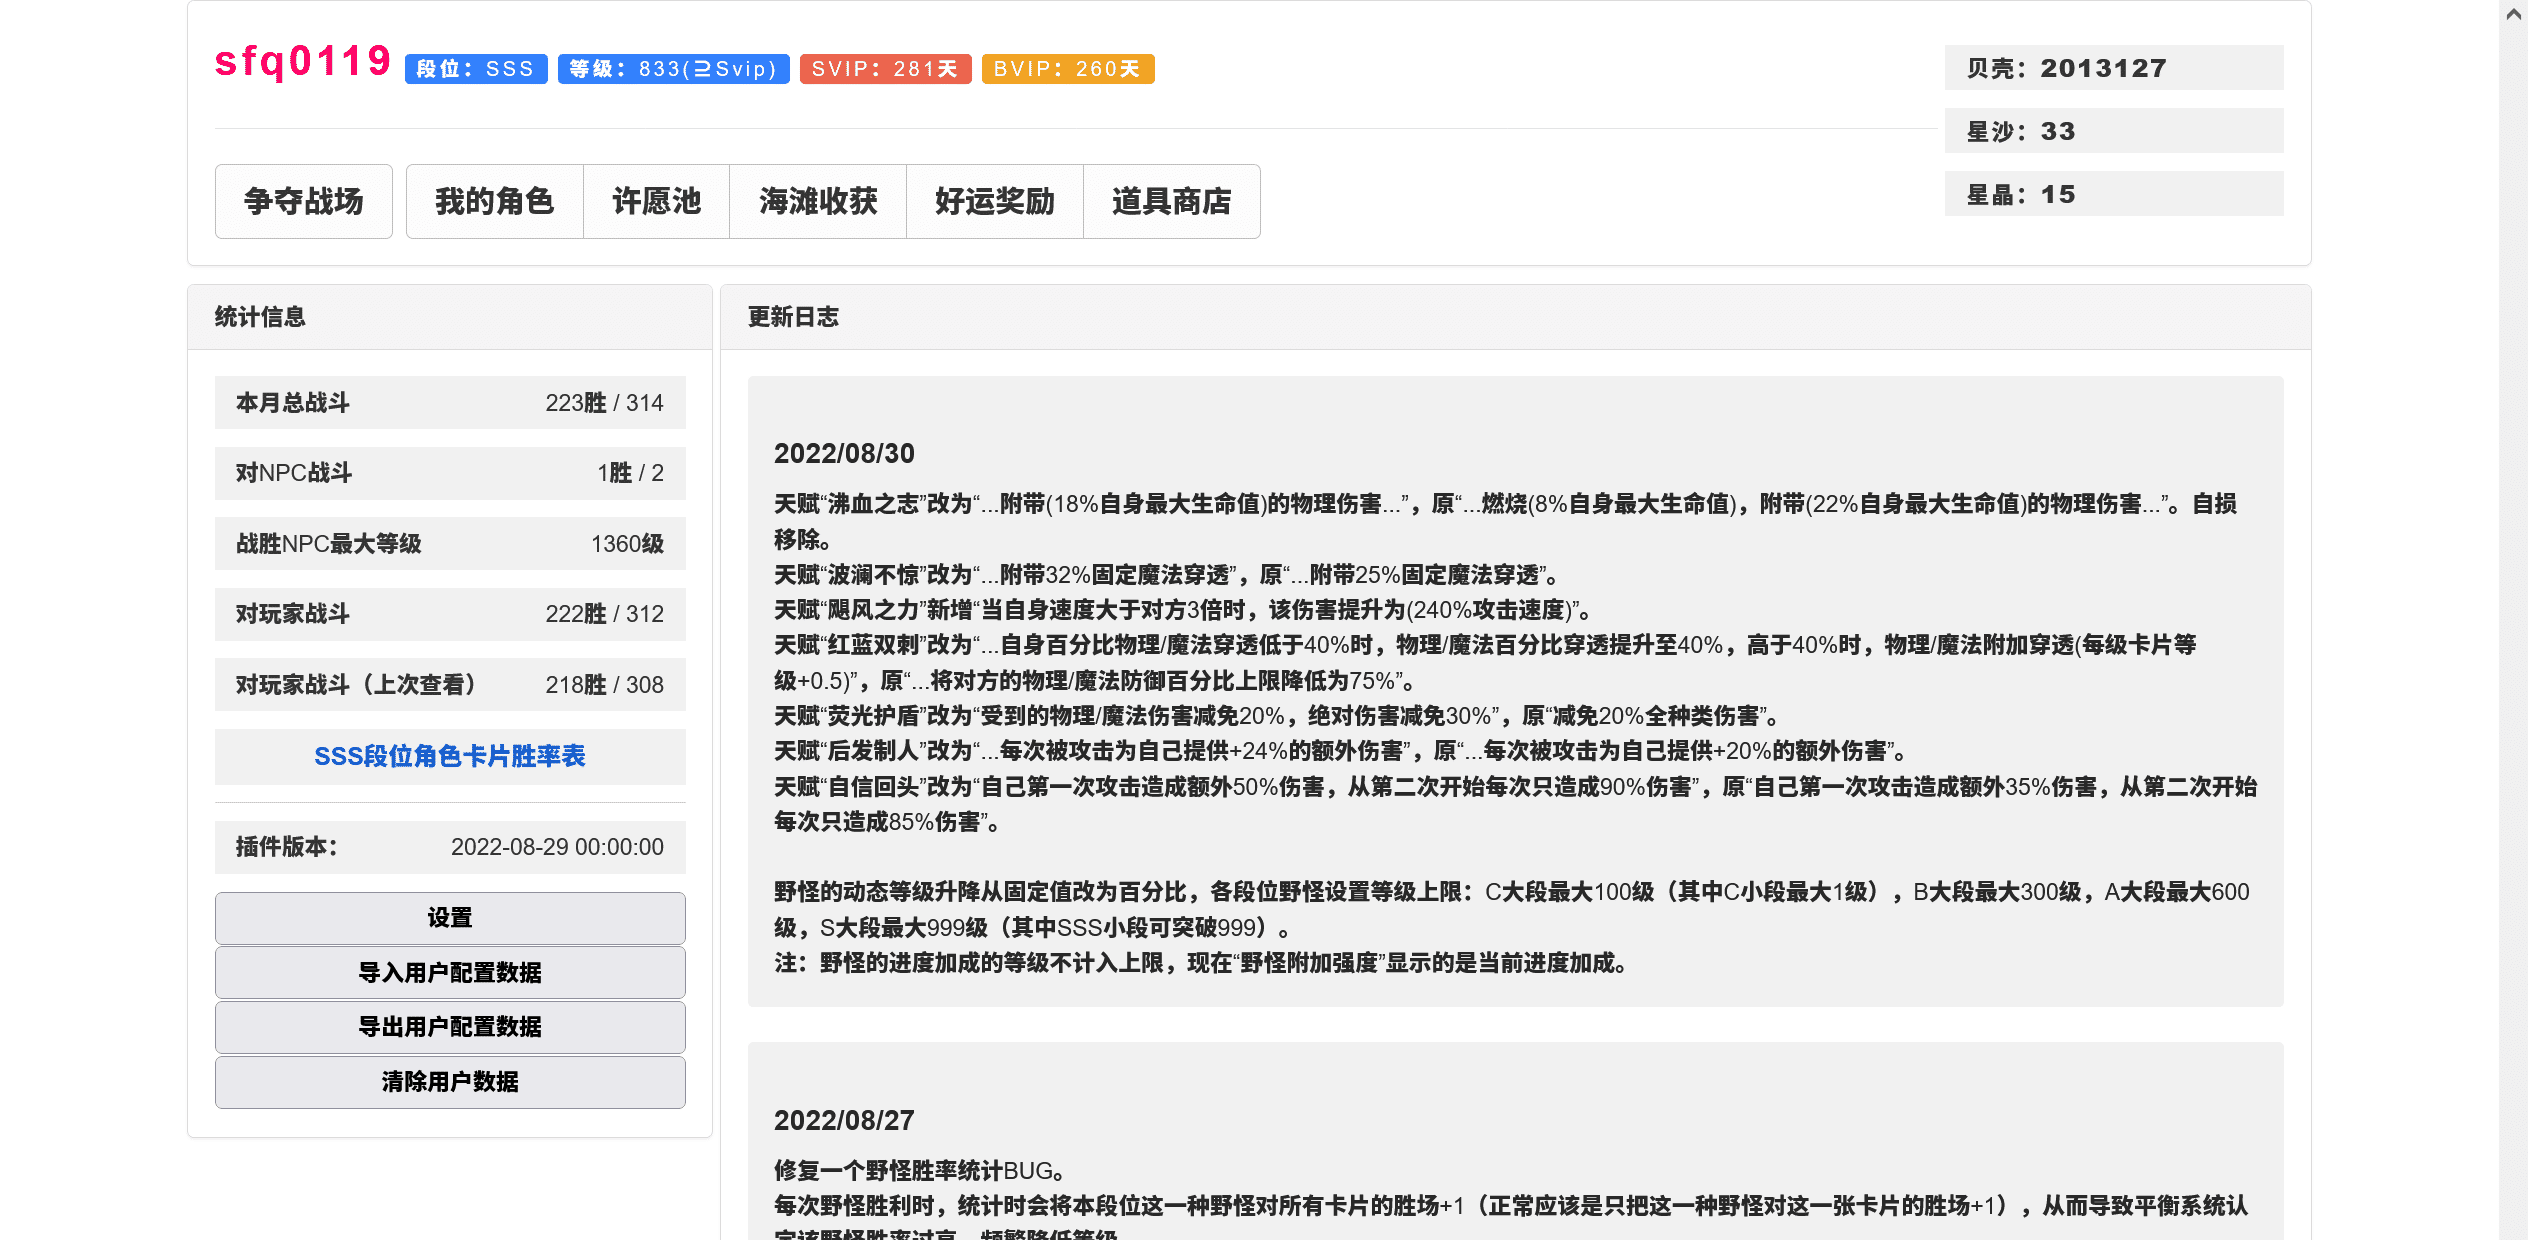 Screenshot 2022-08-31 at 02-18-24 咕咕镇.png